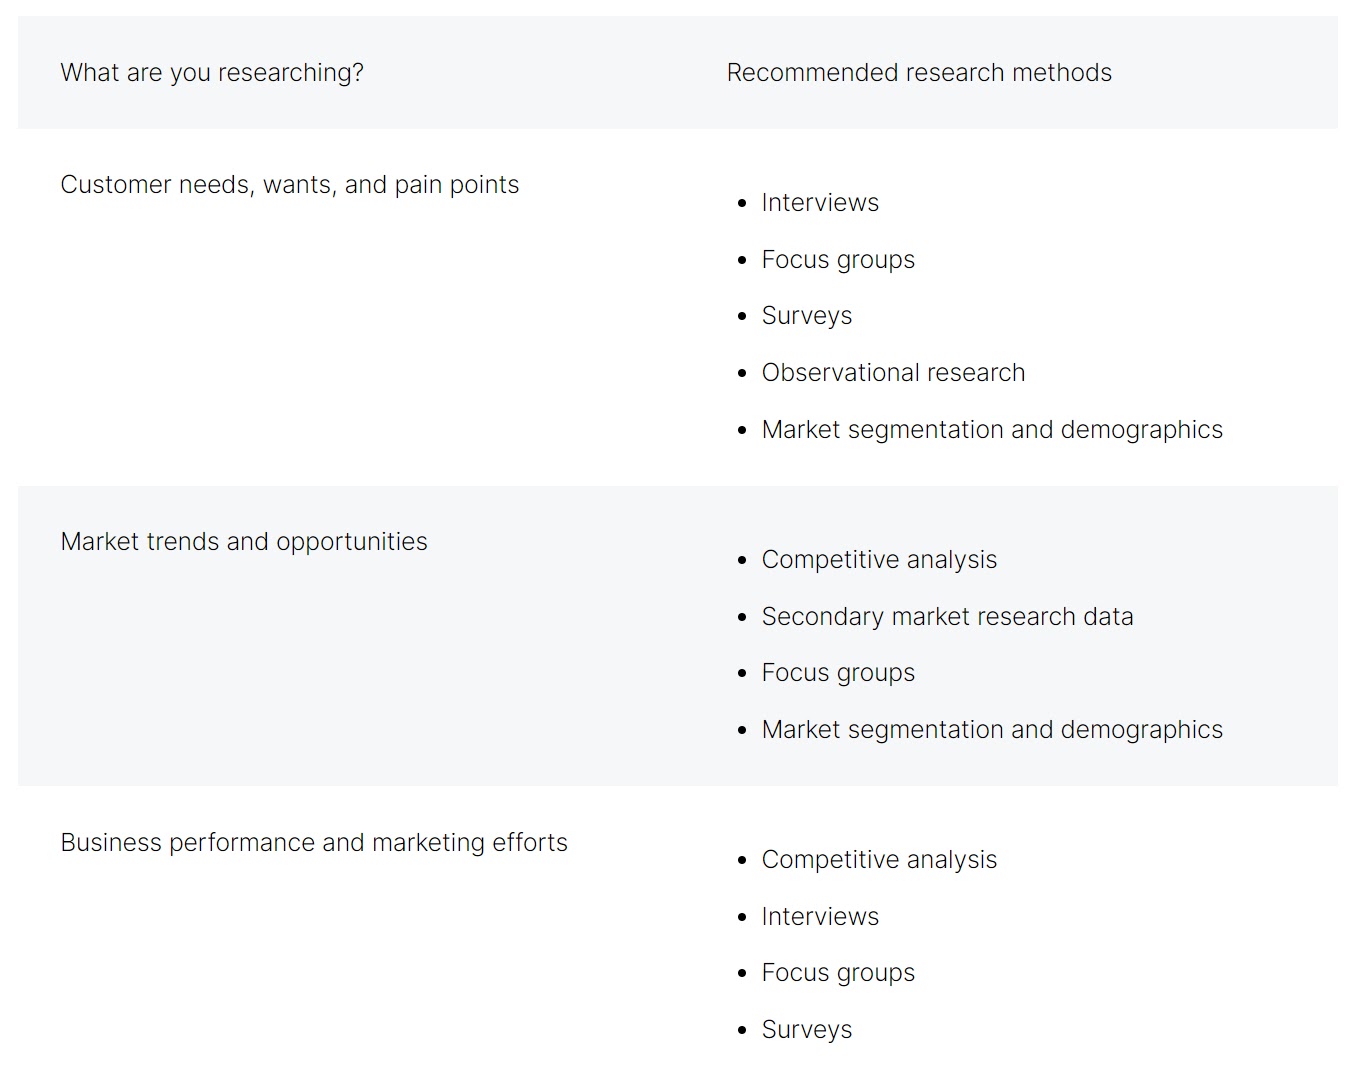 A breakdown of market research methods